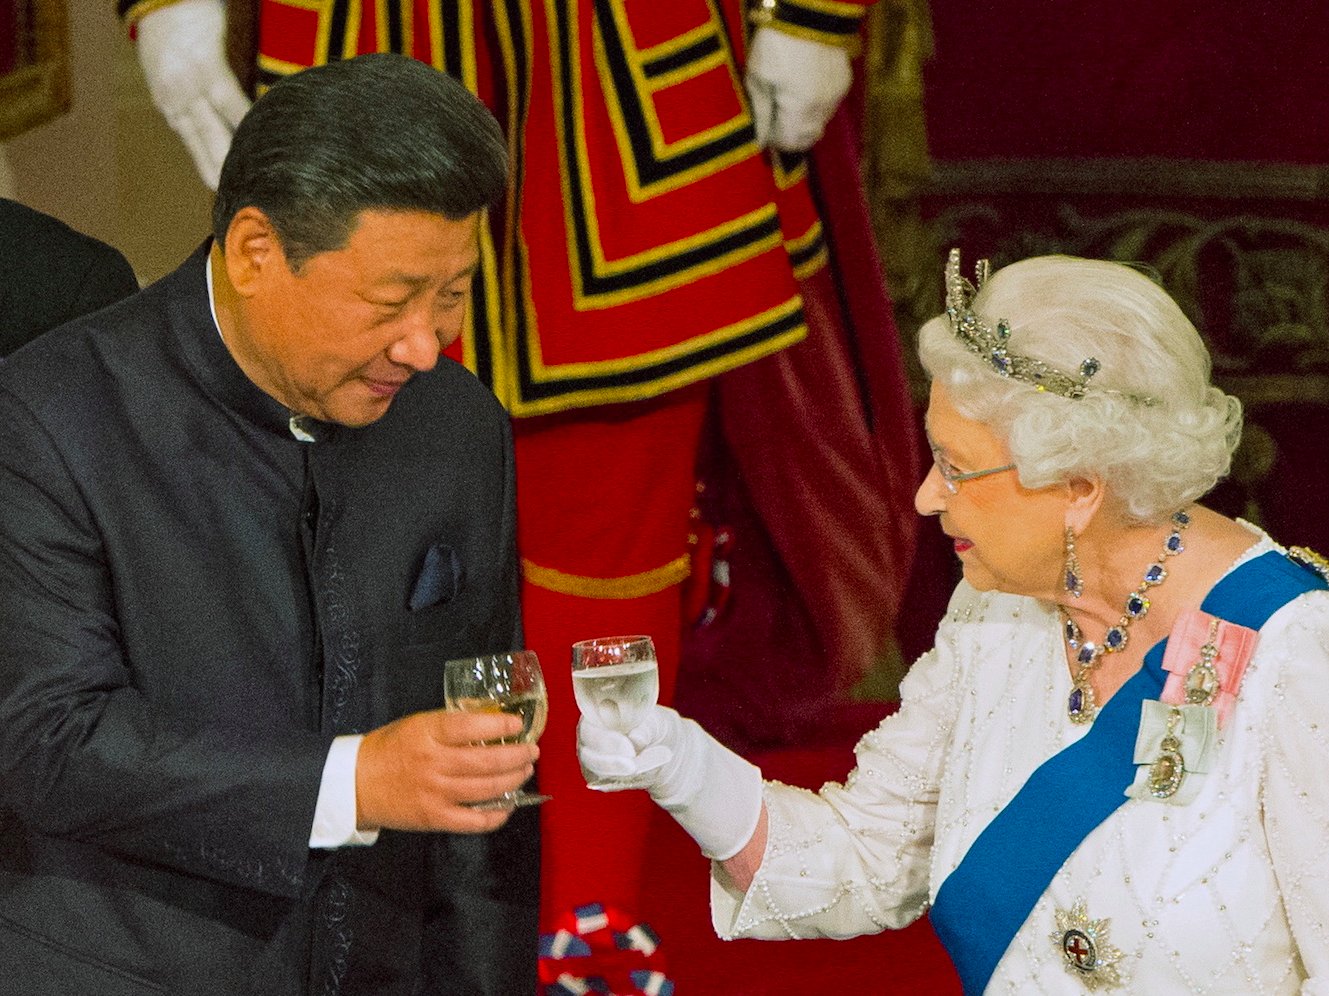  (Video) La Reina Isabel llama “groseros” a funcionarios chinos que visitaron Londres